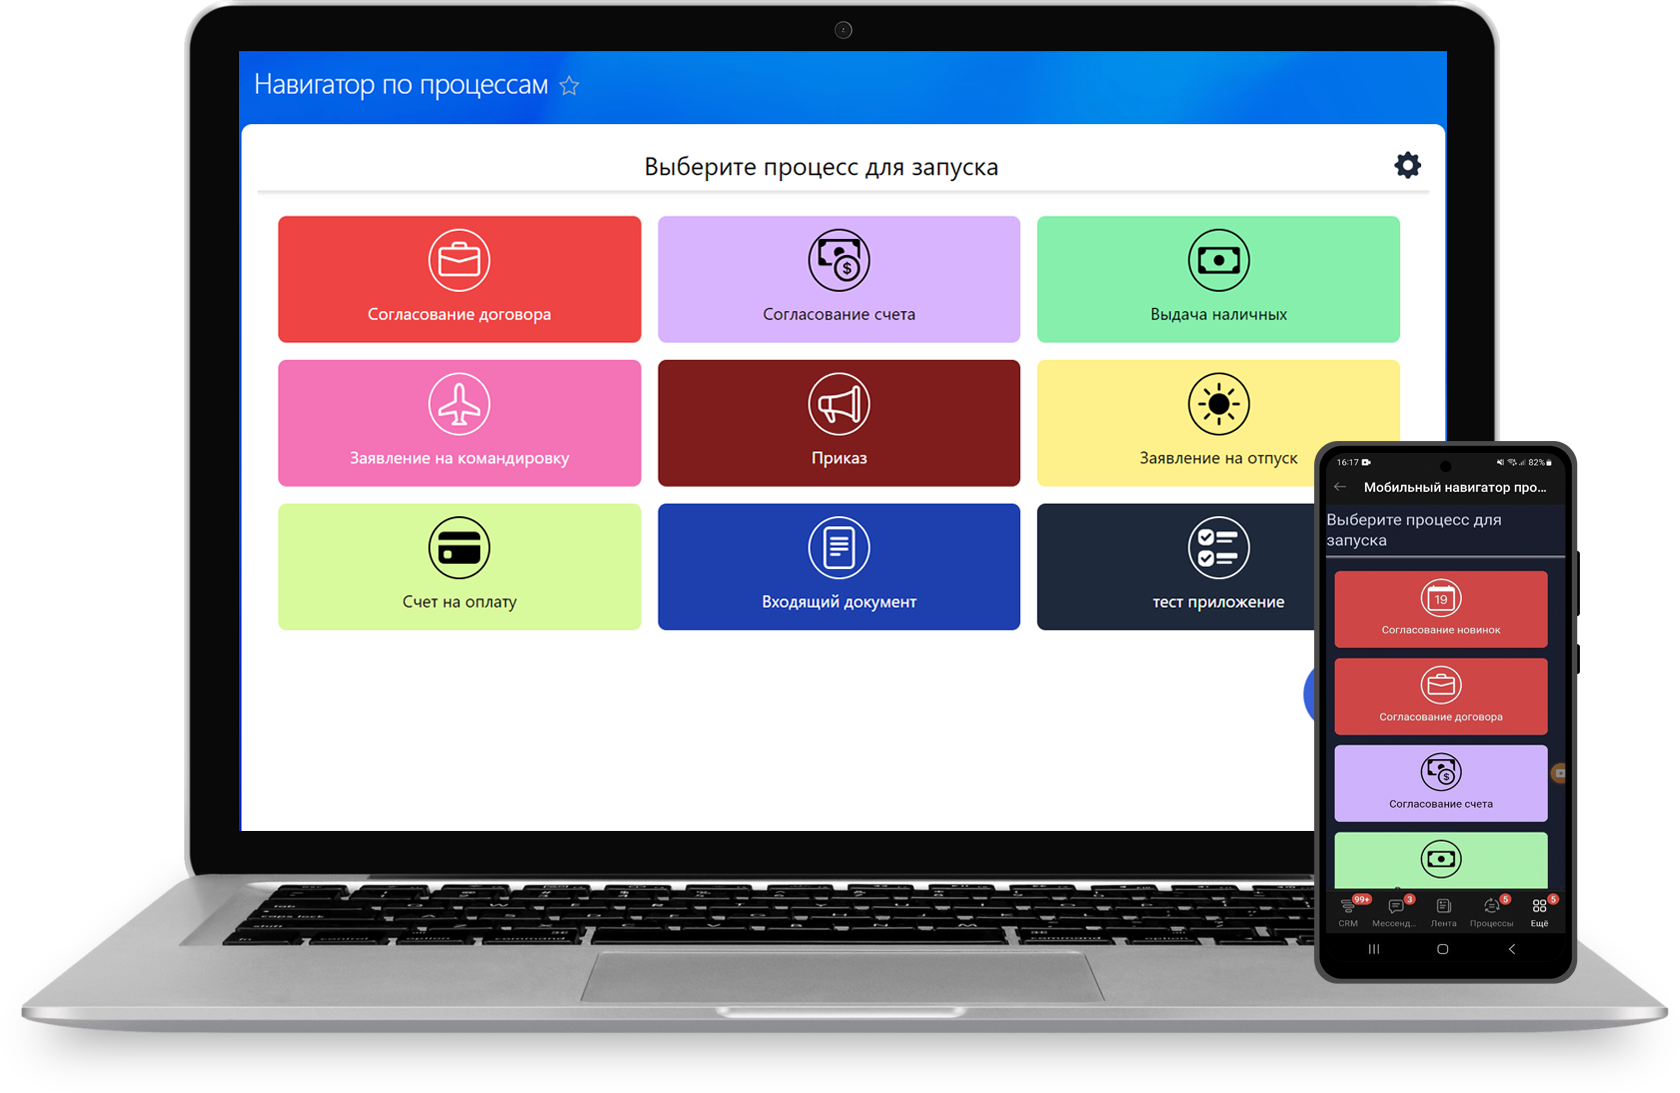 приложение для Битрикс24 Телефонный навигатор бизнес-процессов запуск бизнес-процессов в отдельном приложении, разделе Smart Бизнес решение для бизнес